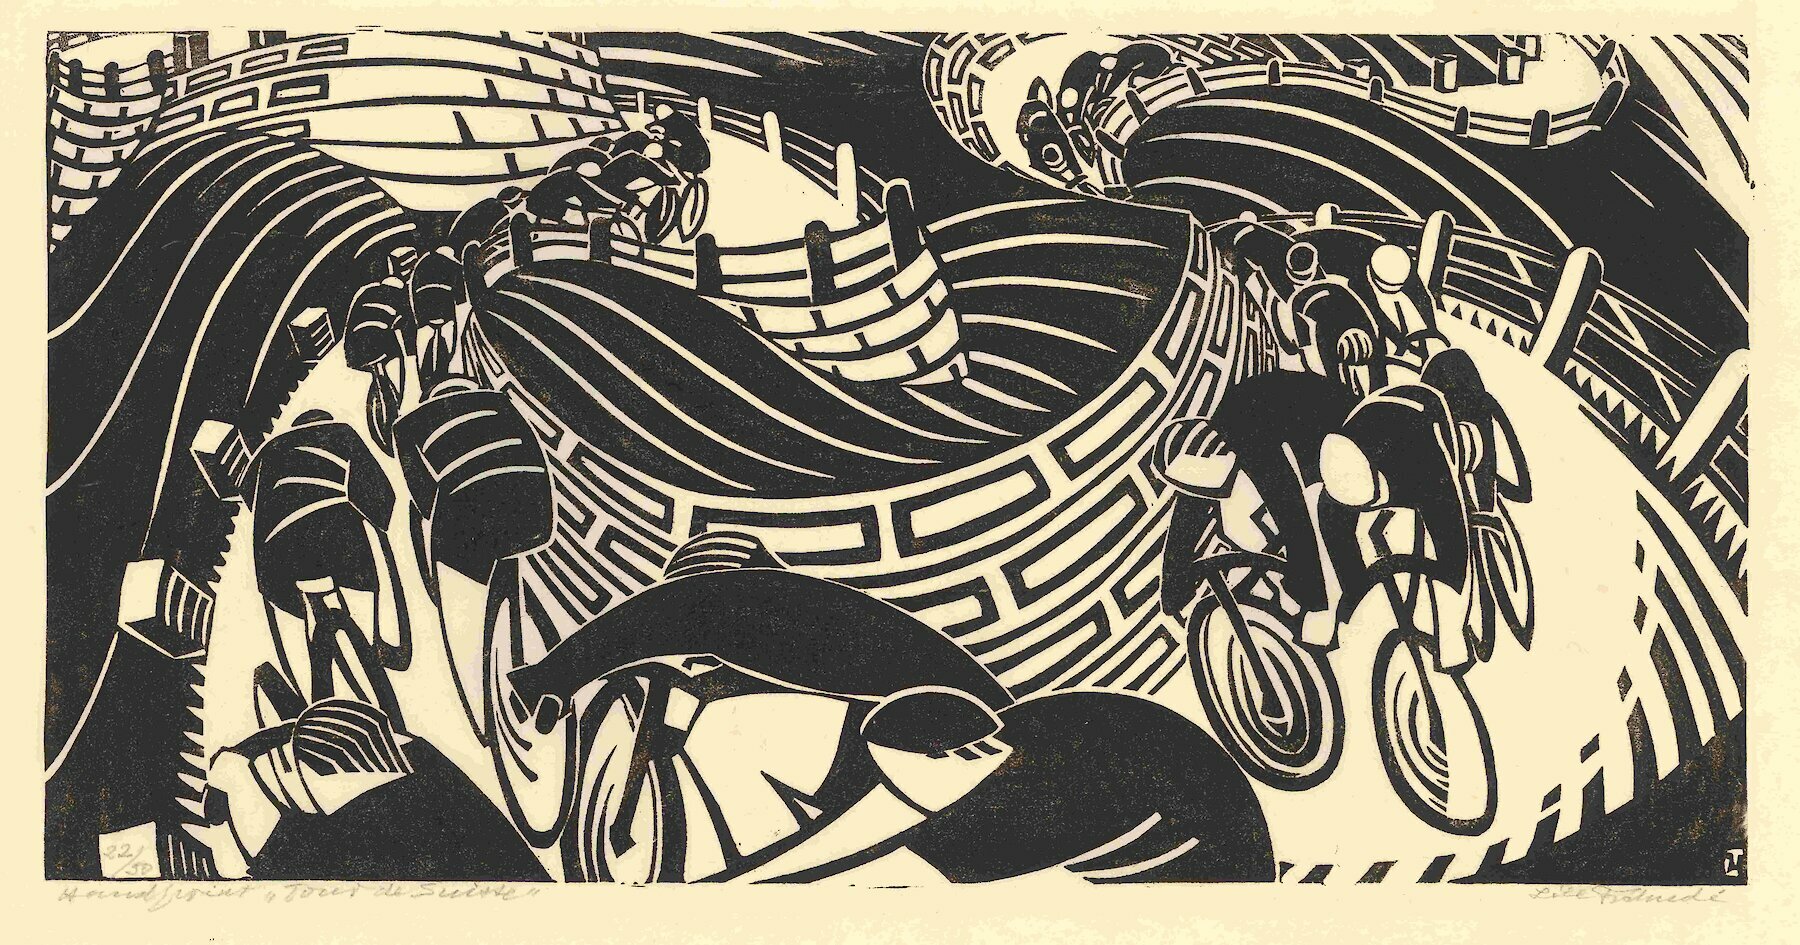 Lill Tschudi, Tour de Suisse, 1935